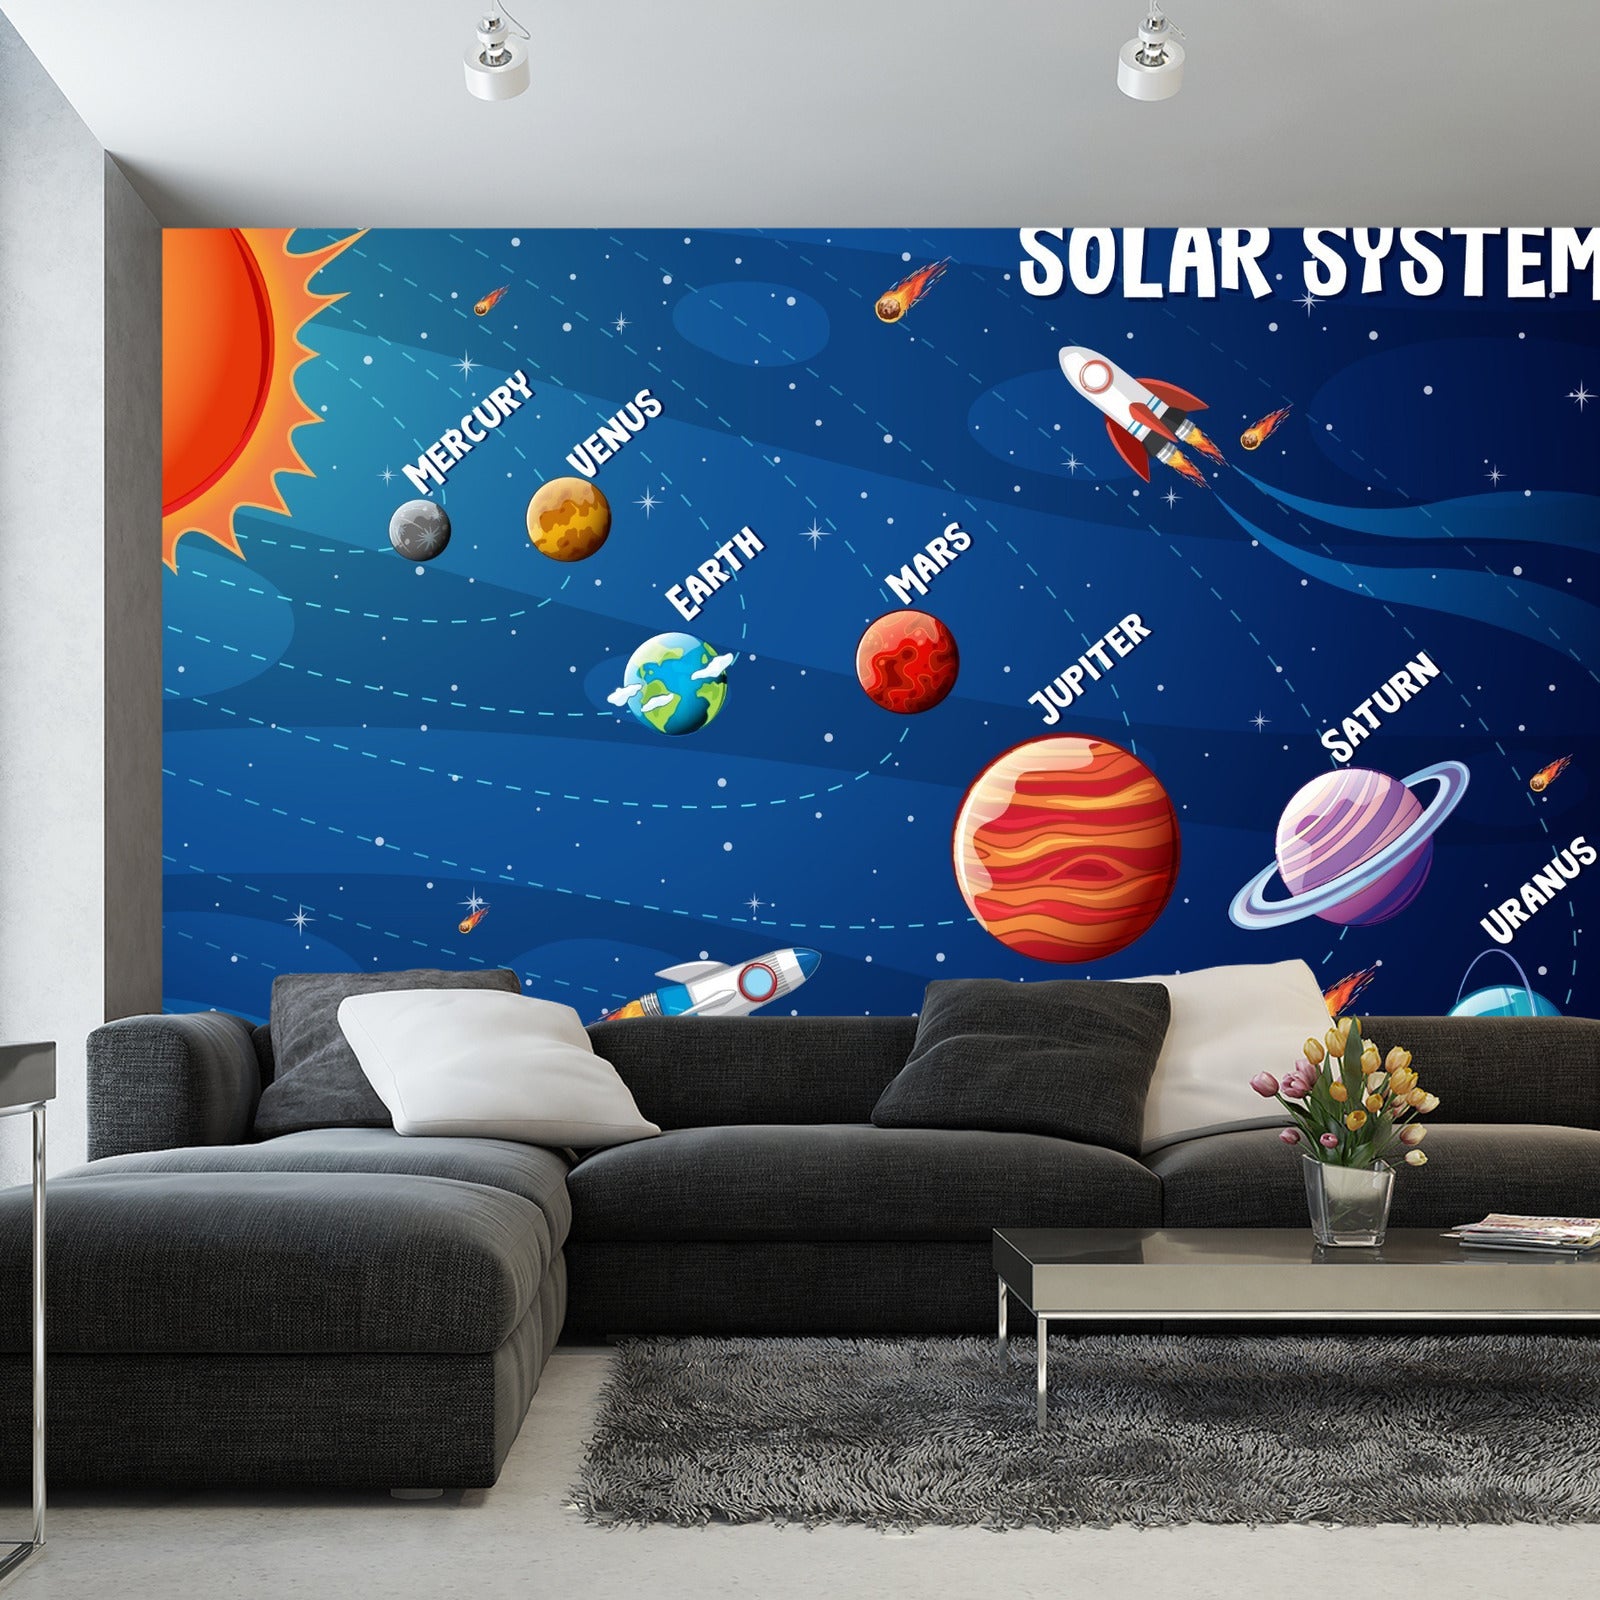 Fototapet Infografikk Om Solsystemet